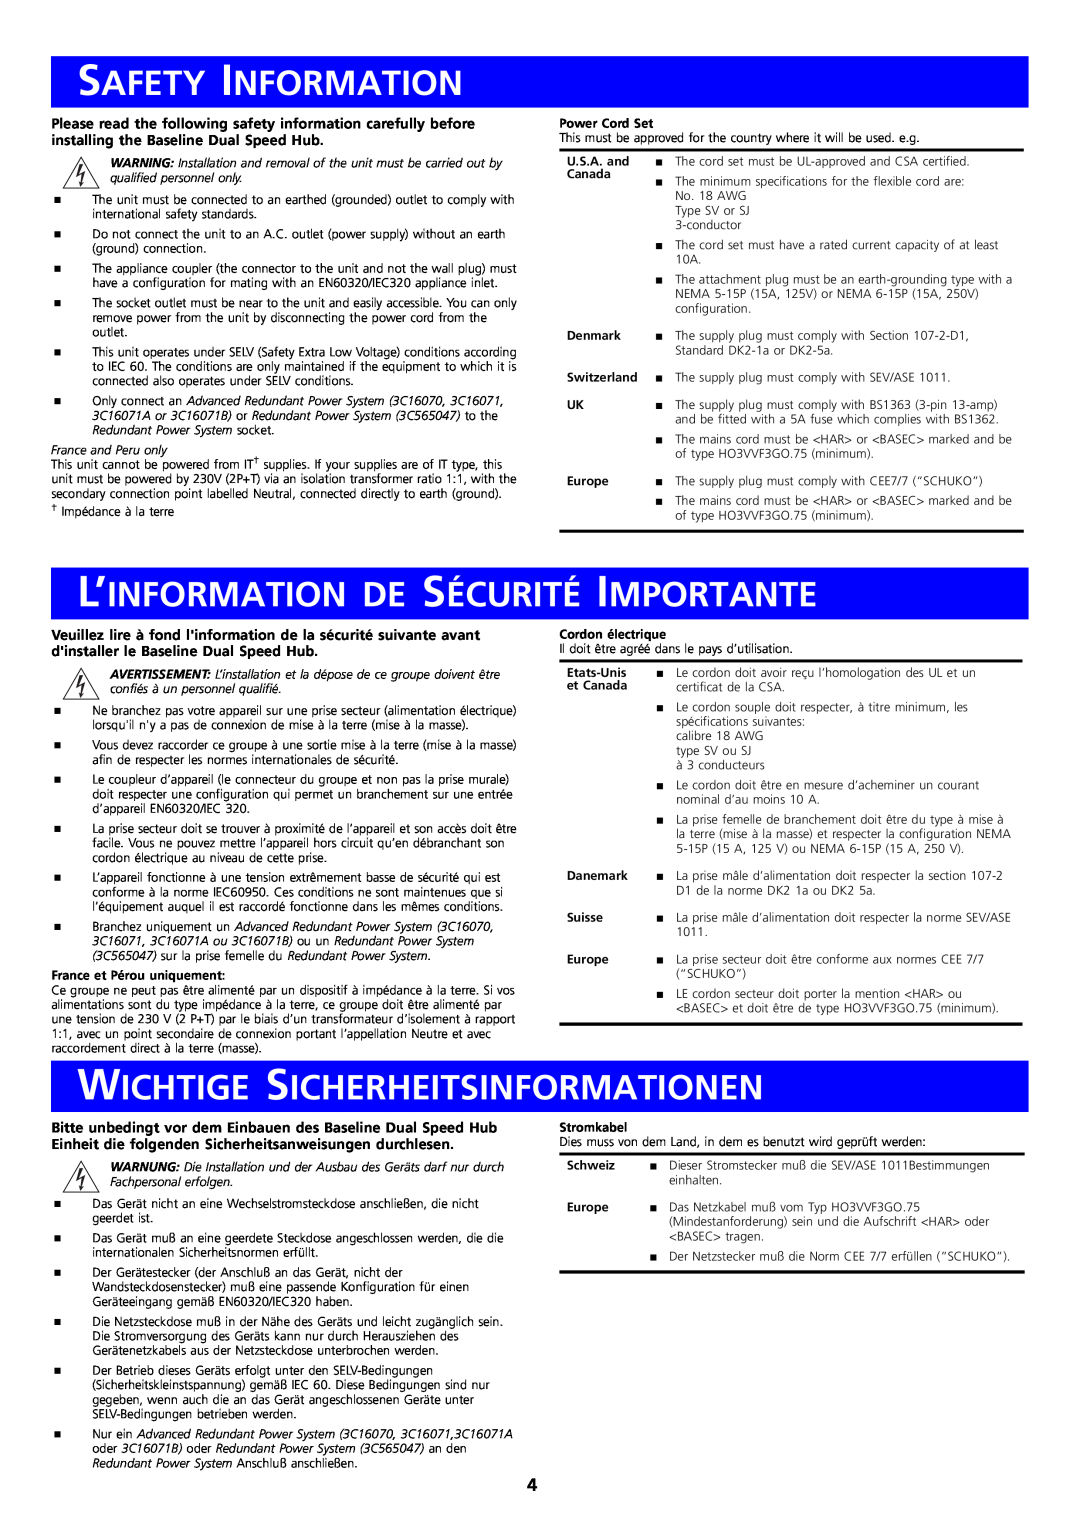 3Com 3C16592B, 3C16593B manual Safety Information, L’Information De Sécurité Importante, Wichtige Sicherheitsinformationen 